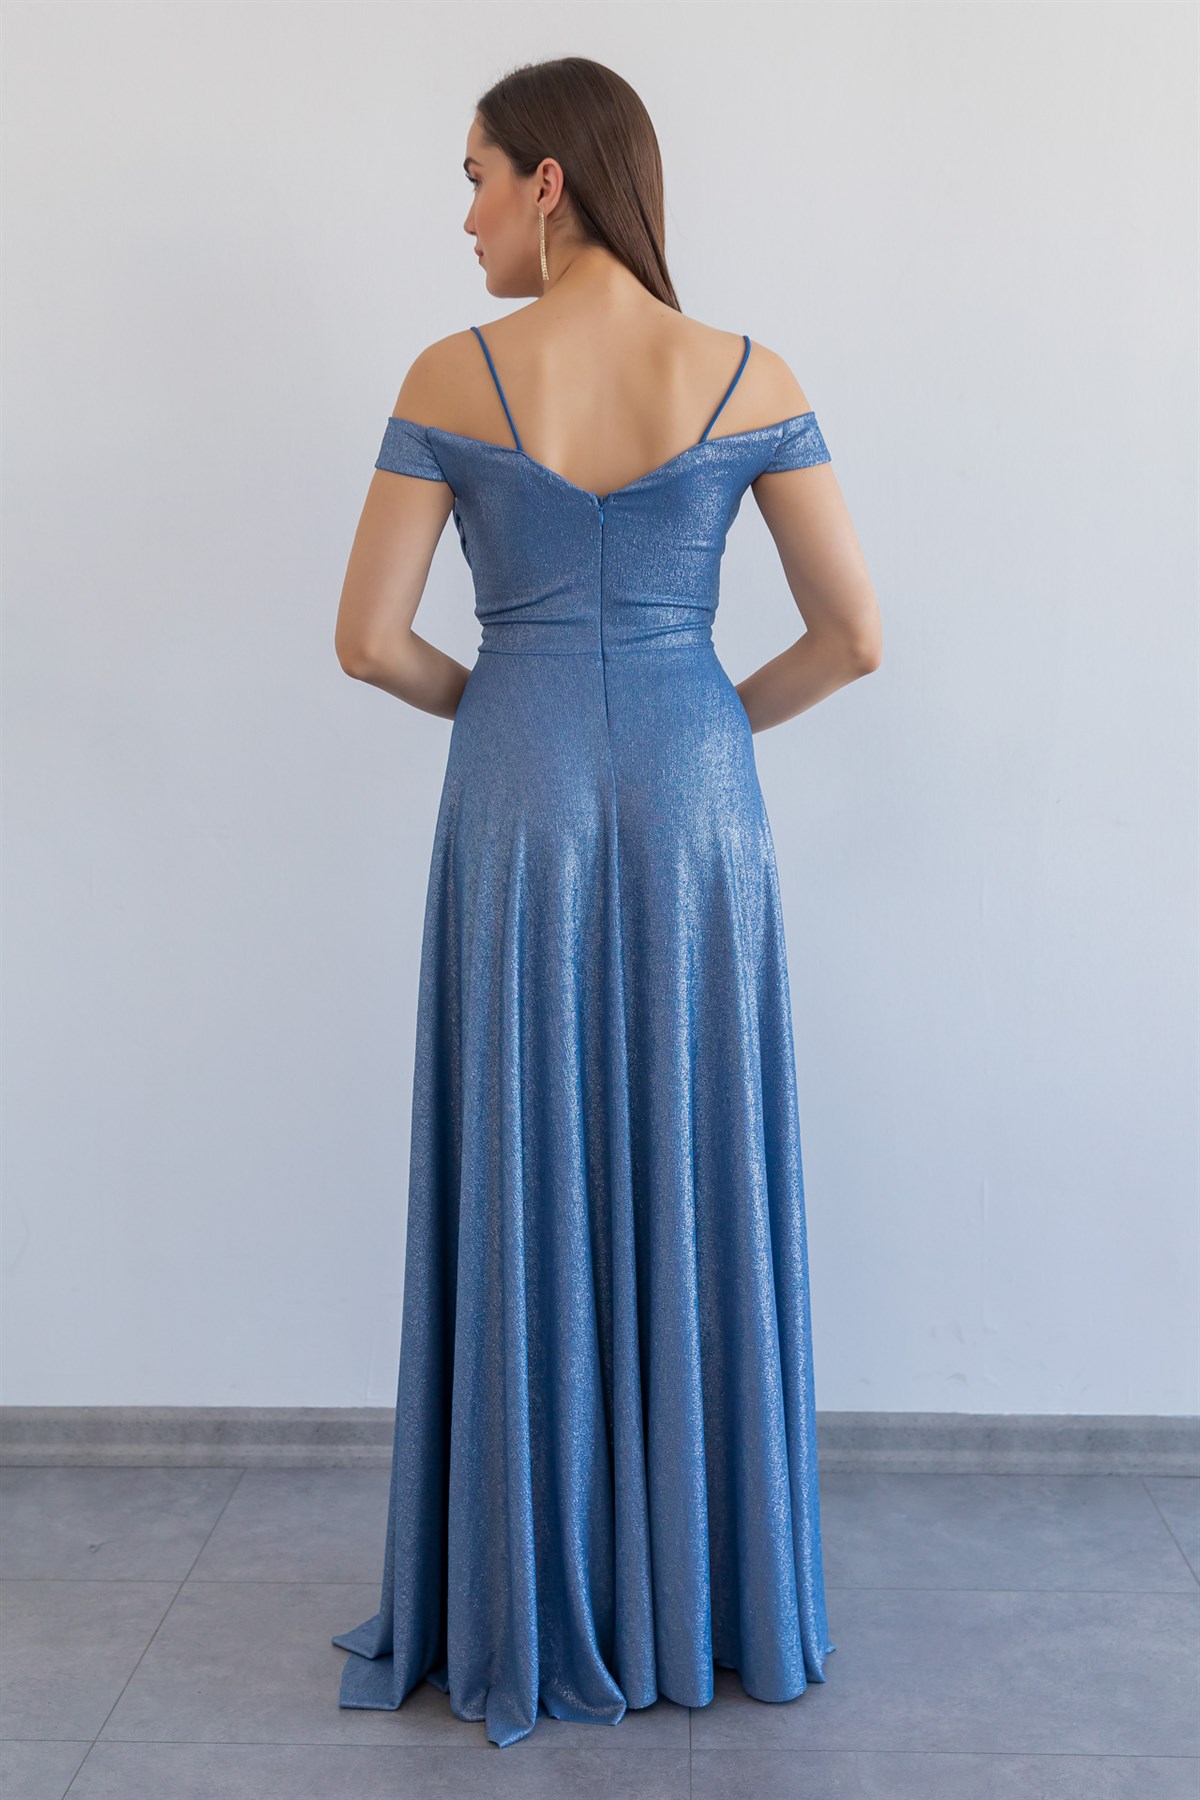 Blue Evening Dress